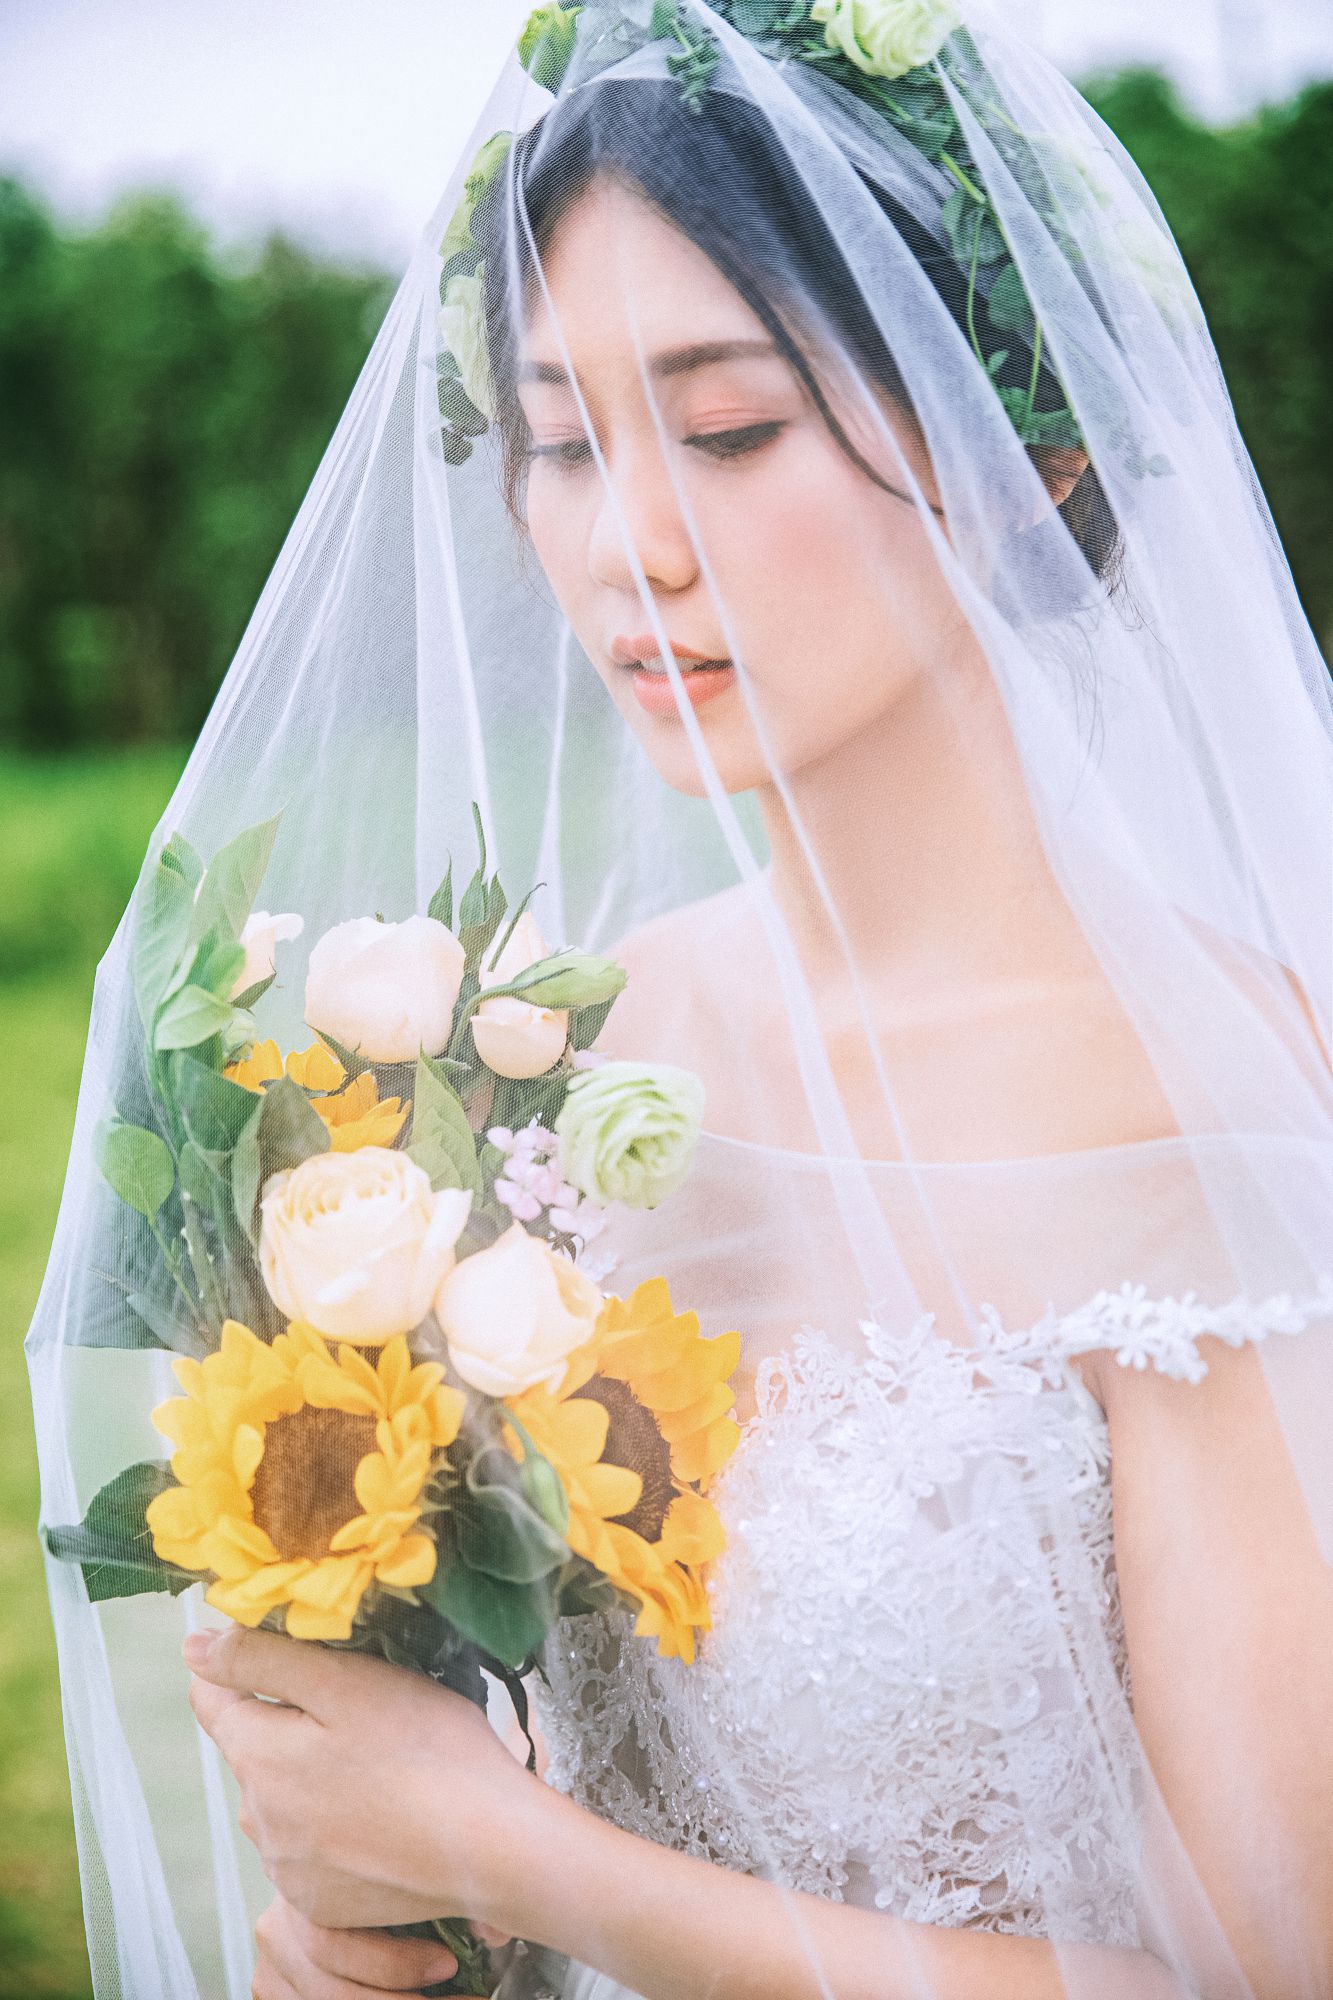 2019年7月广州婚纱照,肇庆婚纱照,婚纱照图片